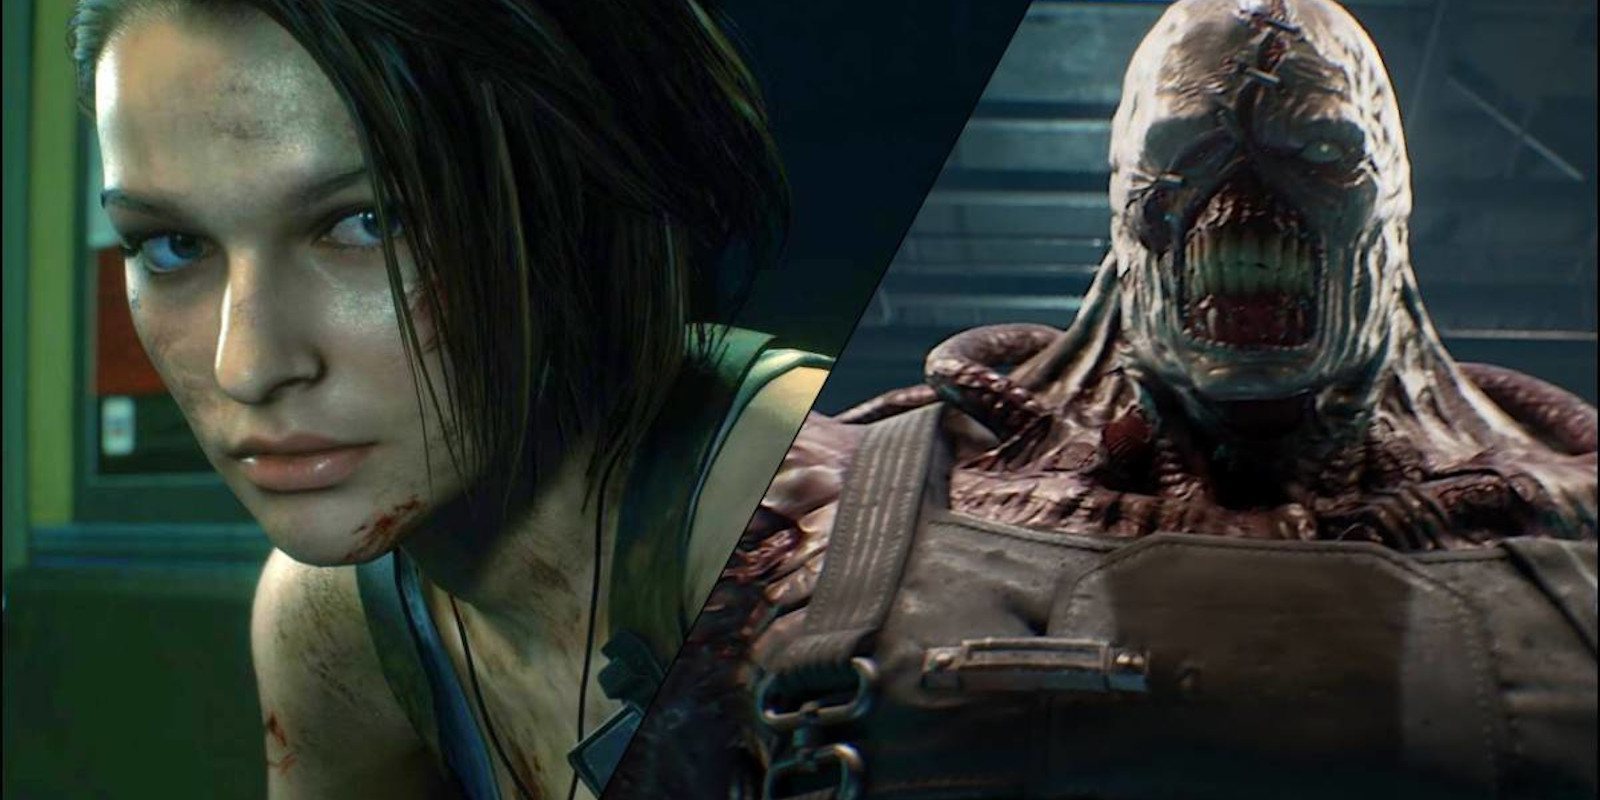 Los encargados de desarrollar 'Resident Evil 3 Remake' son un nuevo estudio